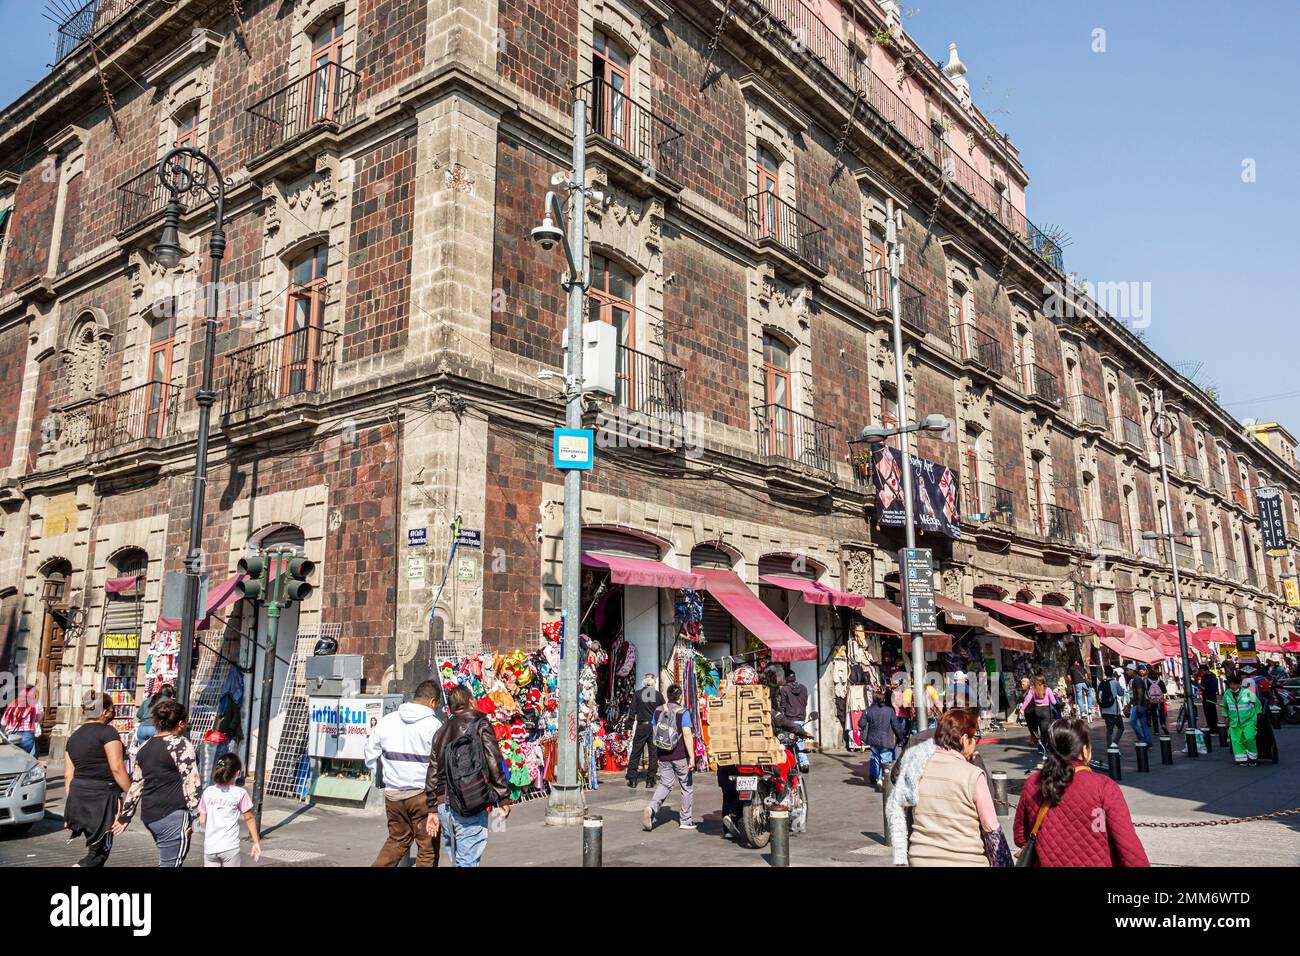 Mexico City, centre historique Historico Centro, Calle de Doncelles, ancien Colegio Nacional National College bâtiment 1754 Nouvelle Arche baroque espagnole Banque D'Images